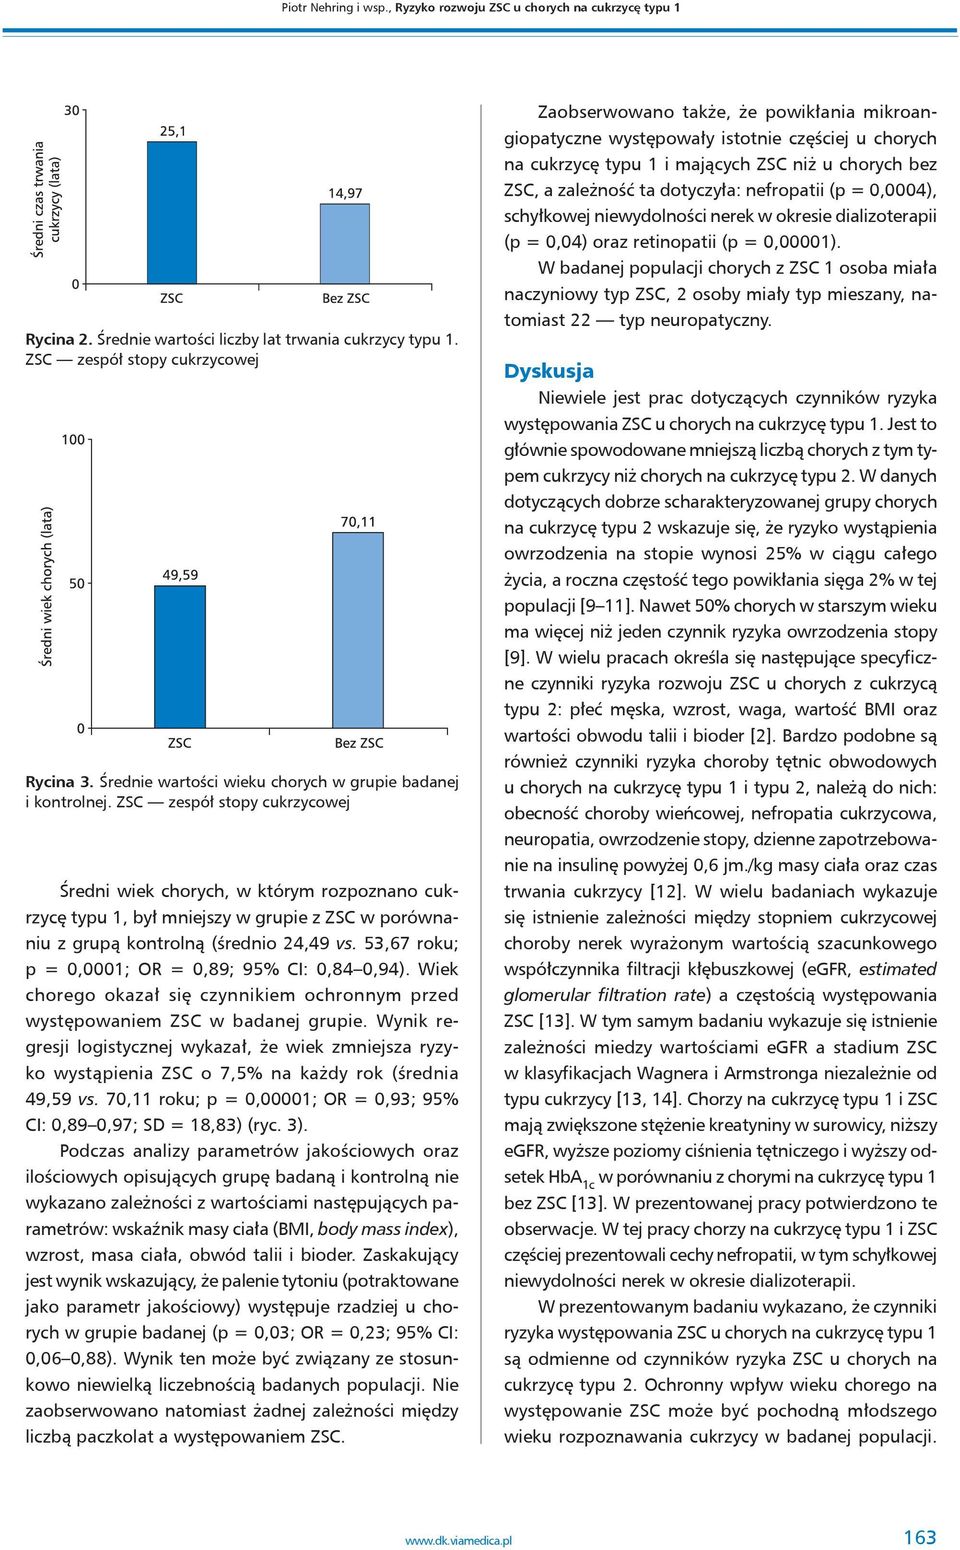 ZSC zespół stopy cukrzycowej Średni wiek chorych, w którym rozpoznano cukrzycę typu 1, był mniejszy w grupie z ZSC w porównaniu z grupą kontrolną (średnio 24,49 vs.